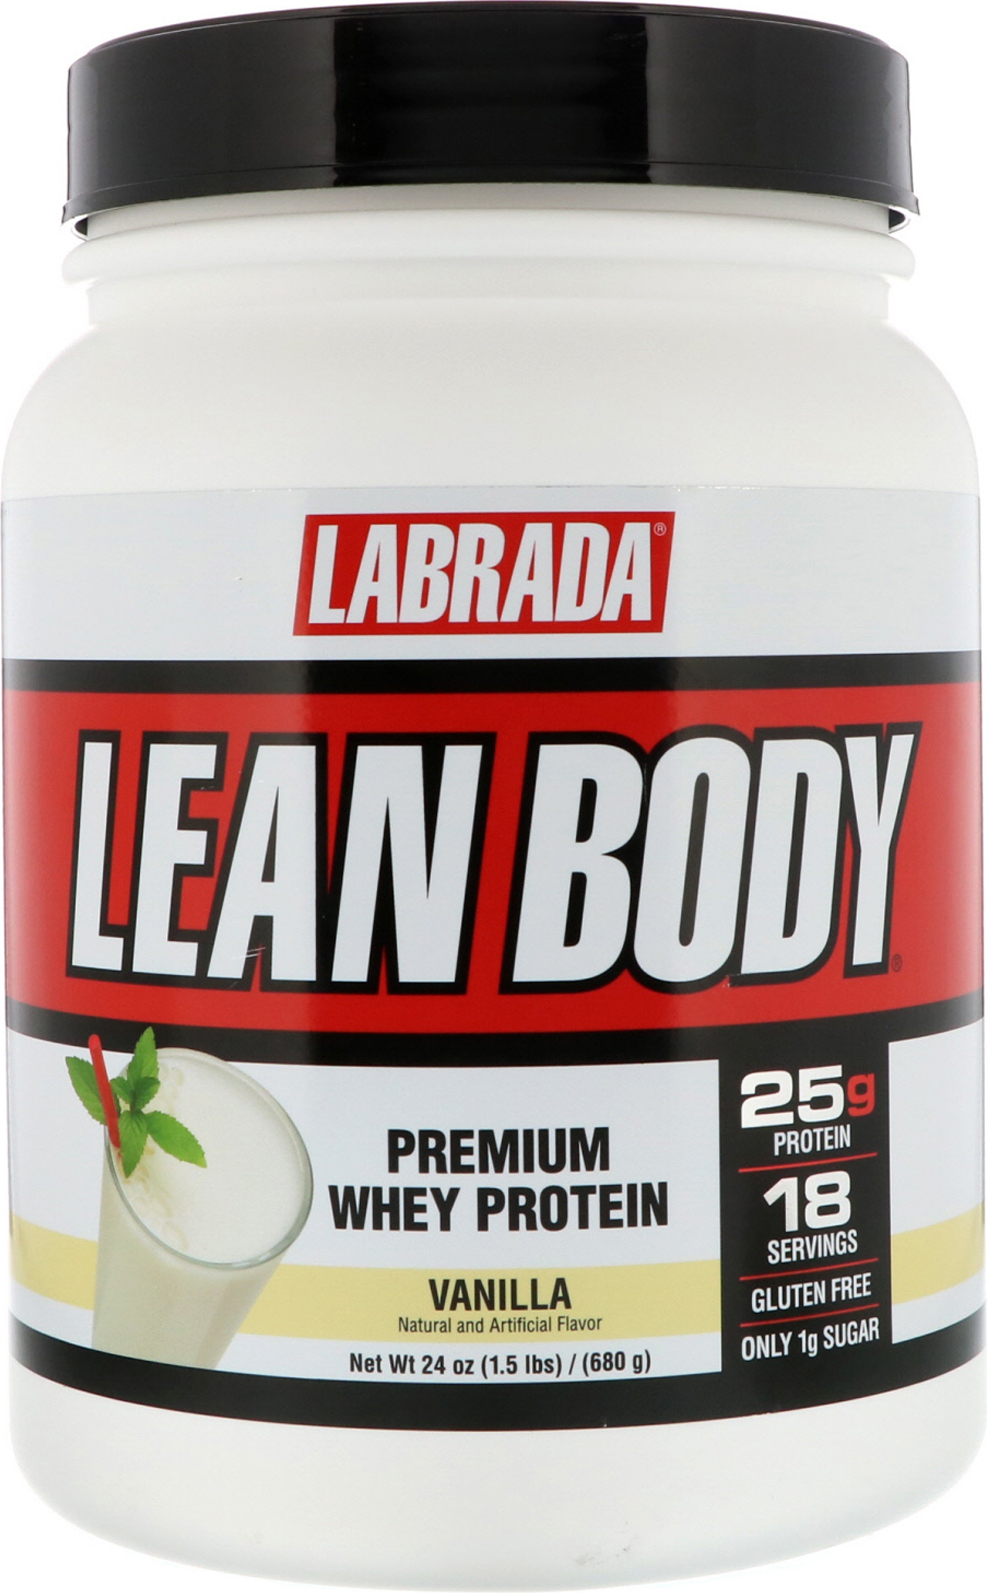 Labrada Lean Body Premium Whey Protein | Save at PricePlow